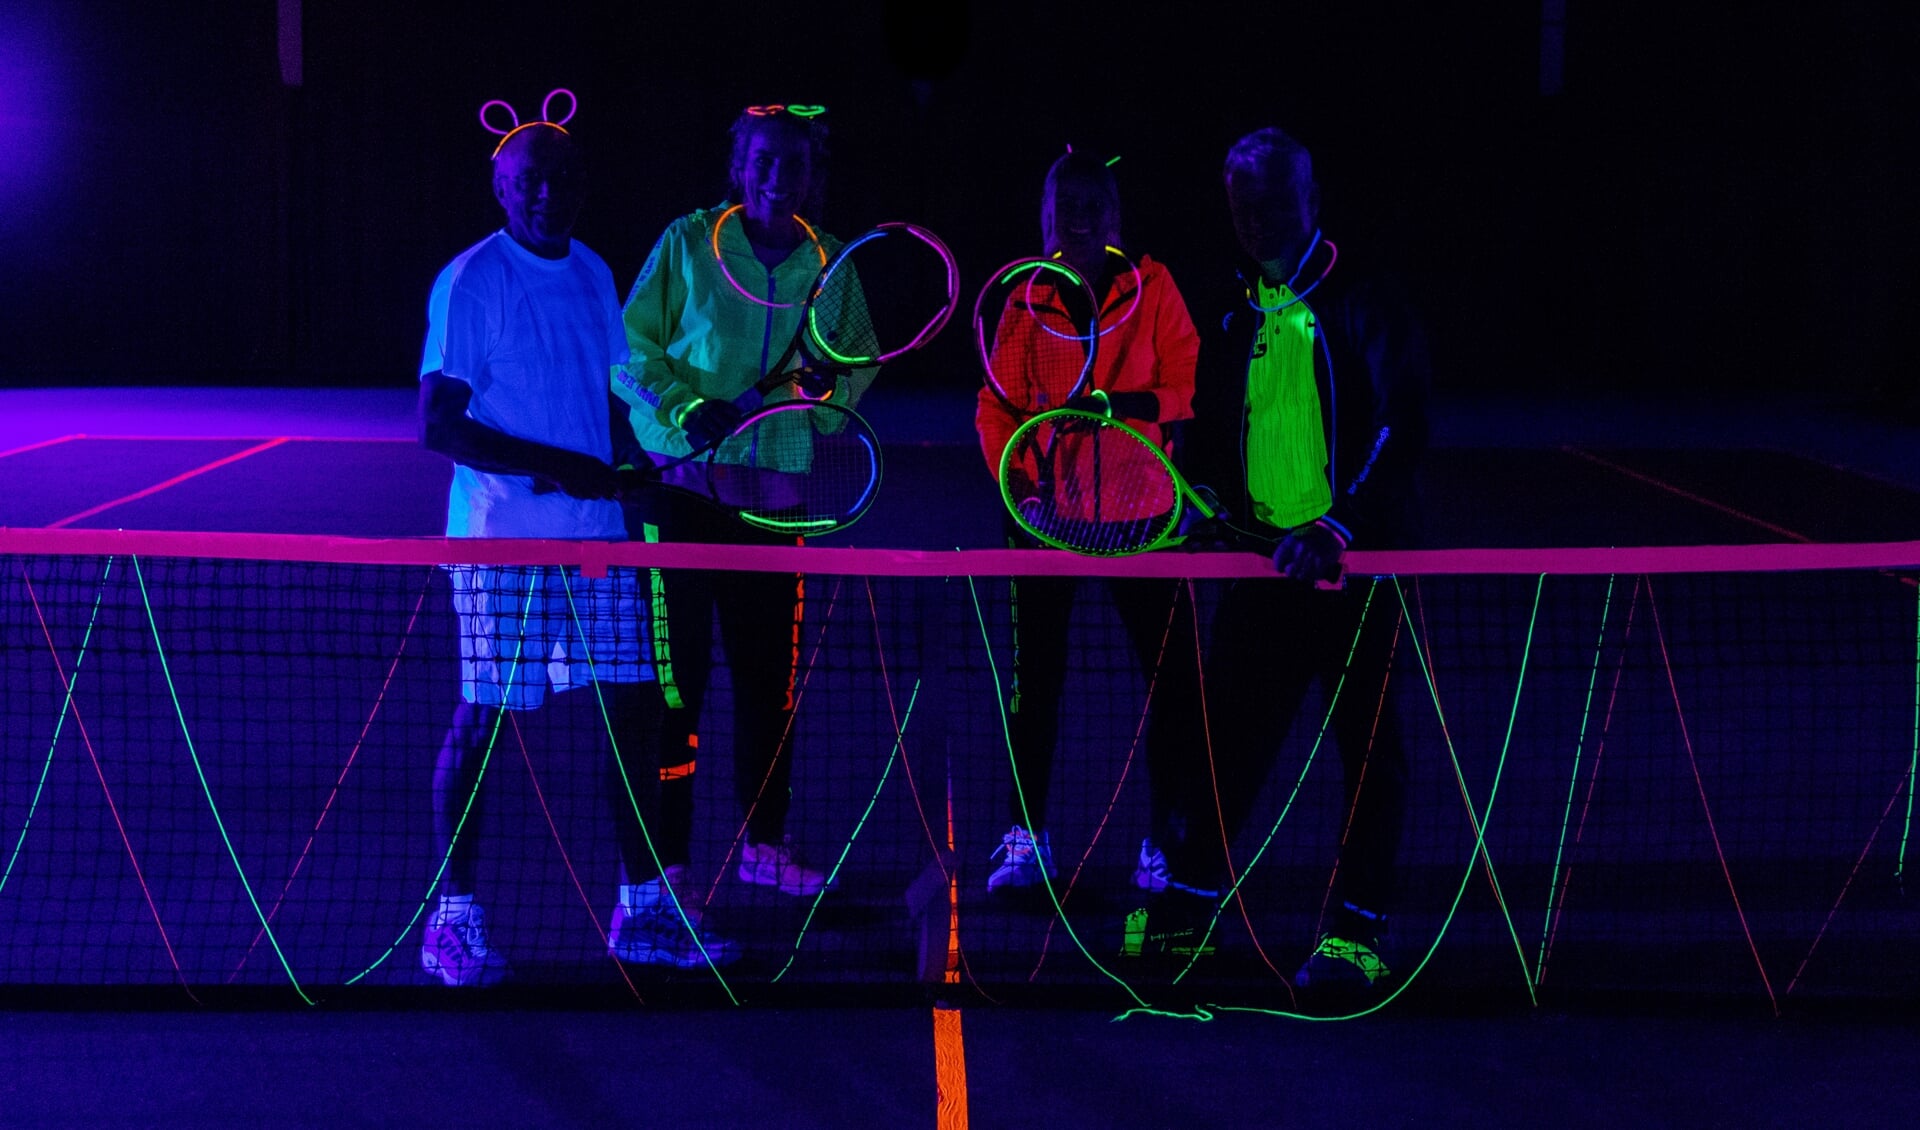 Glow in the dark tennis was een groot succes